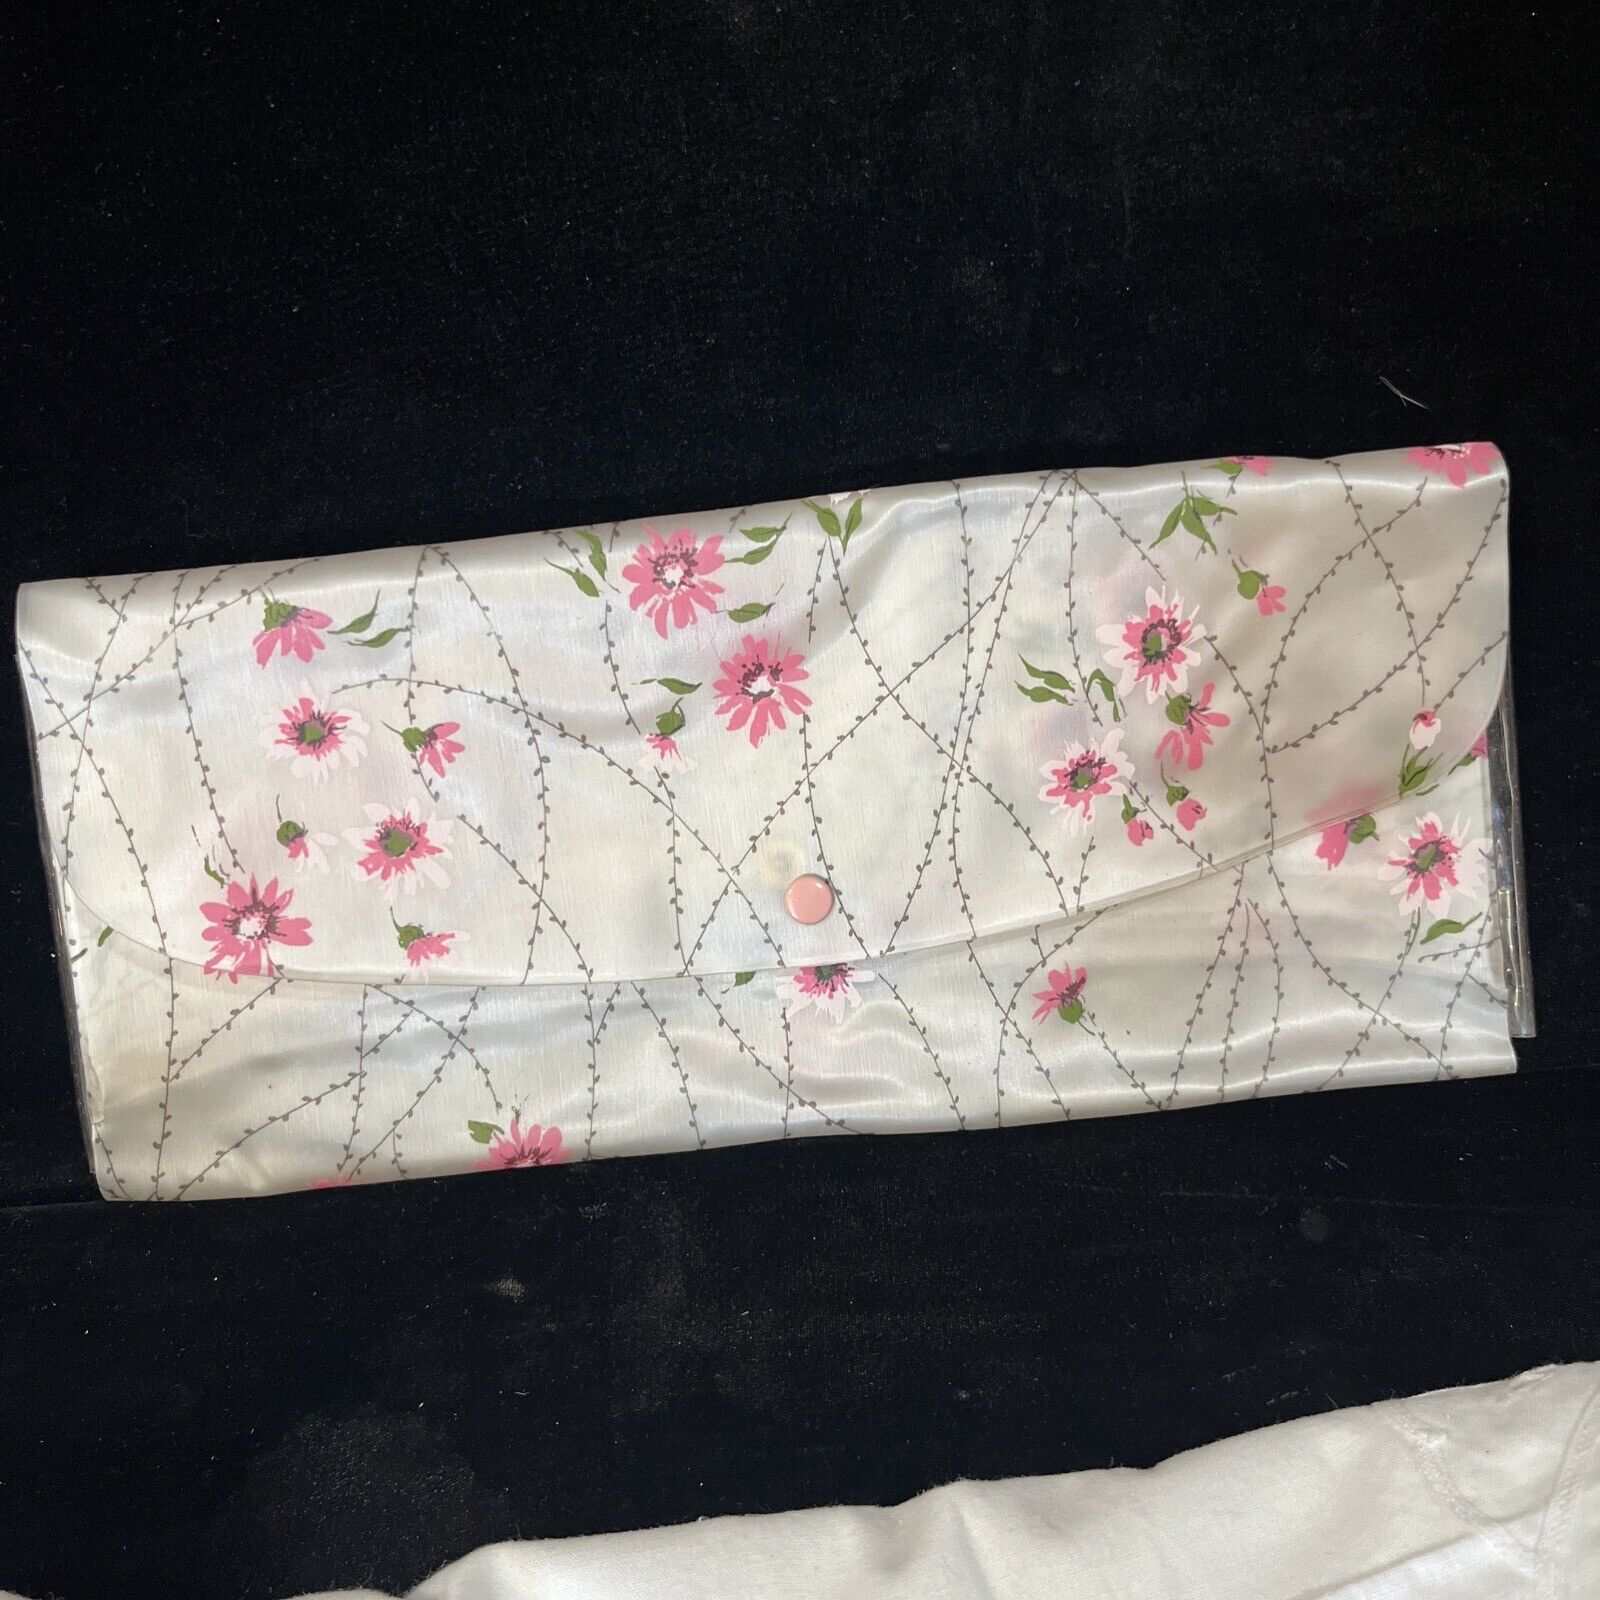 Vintage 1960’s  Pink Floral Mod Groovy Folding Travel Bag vinyl by celebrity